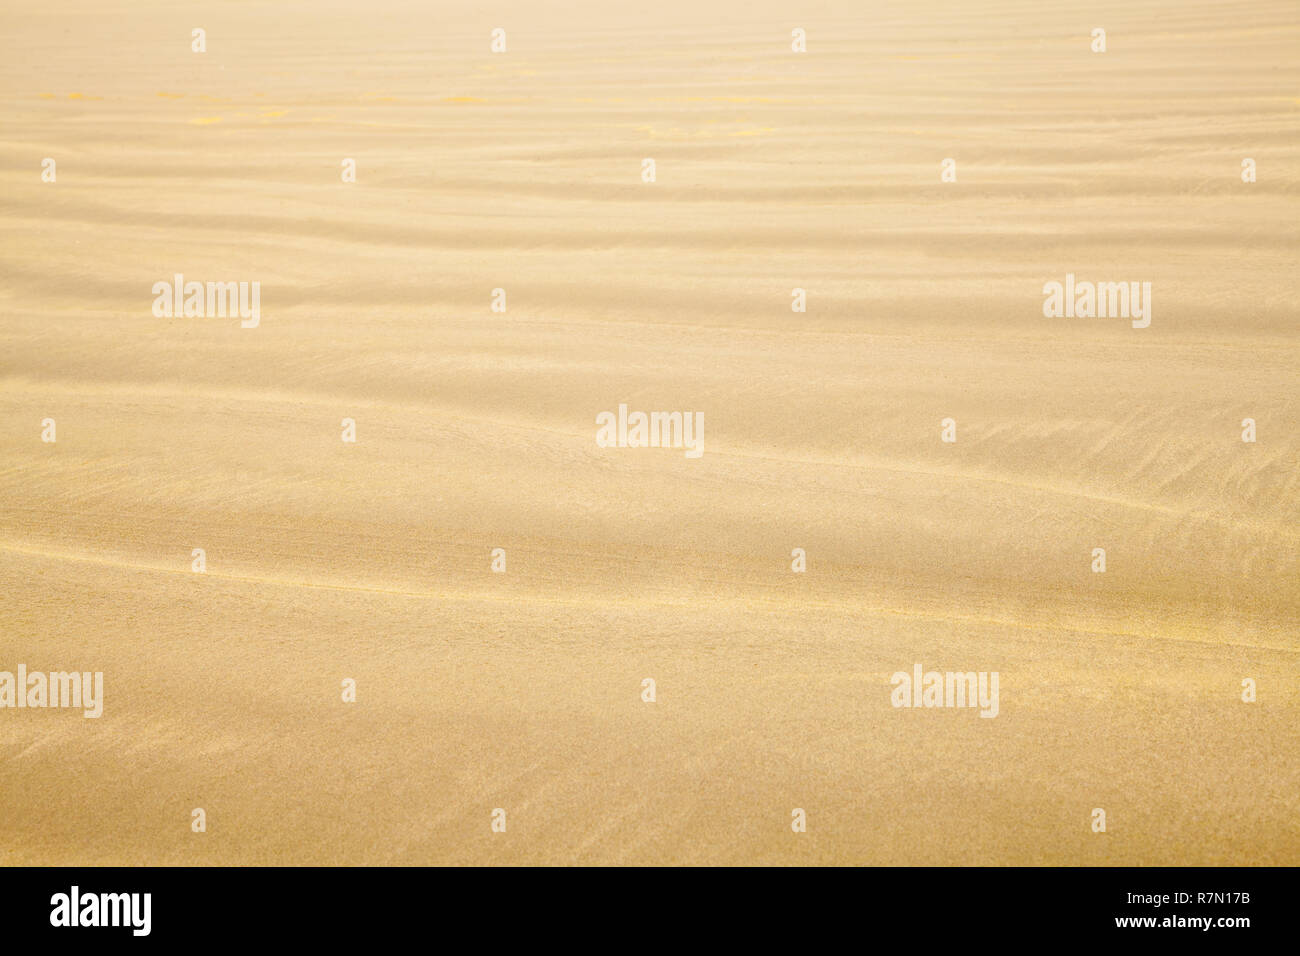 Strand Sand mit Wave Ripple Muster Hintergrund. Stockfoto